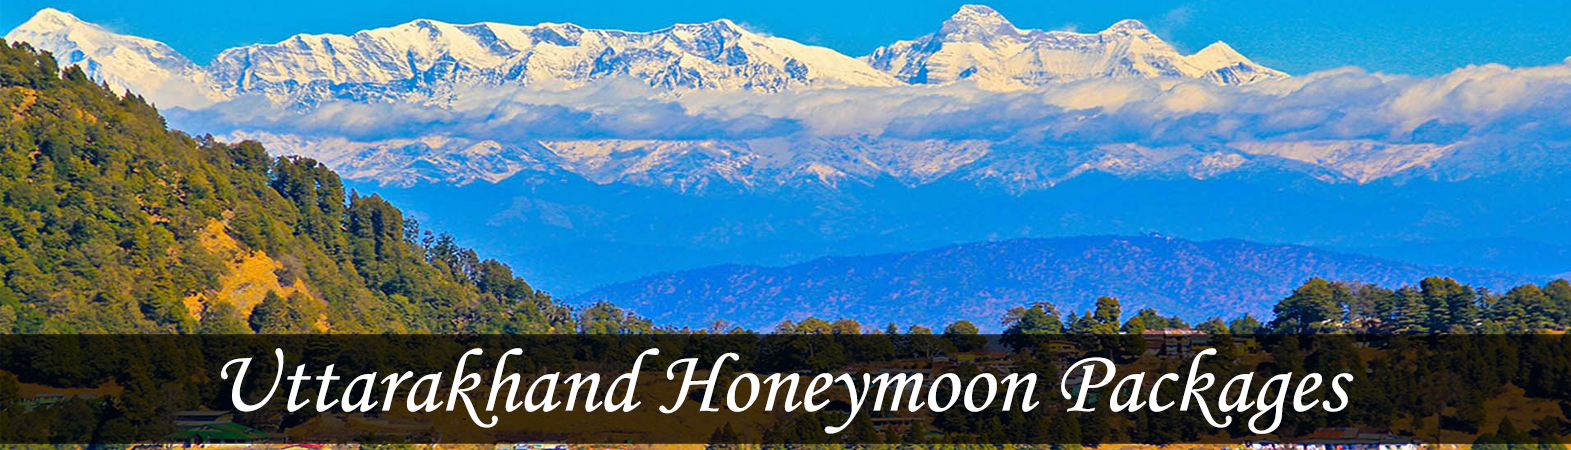 Honeymoon Packages For Uttarakhand